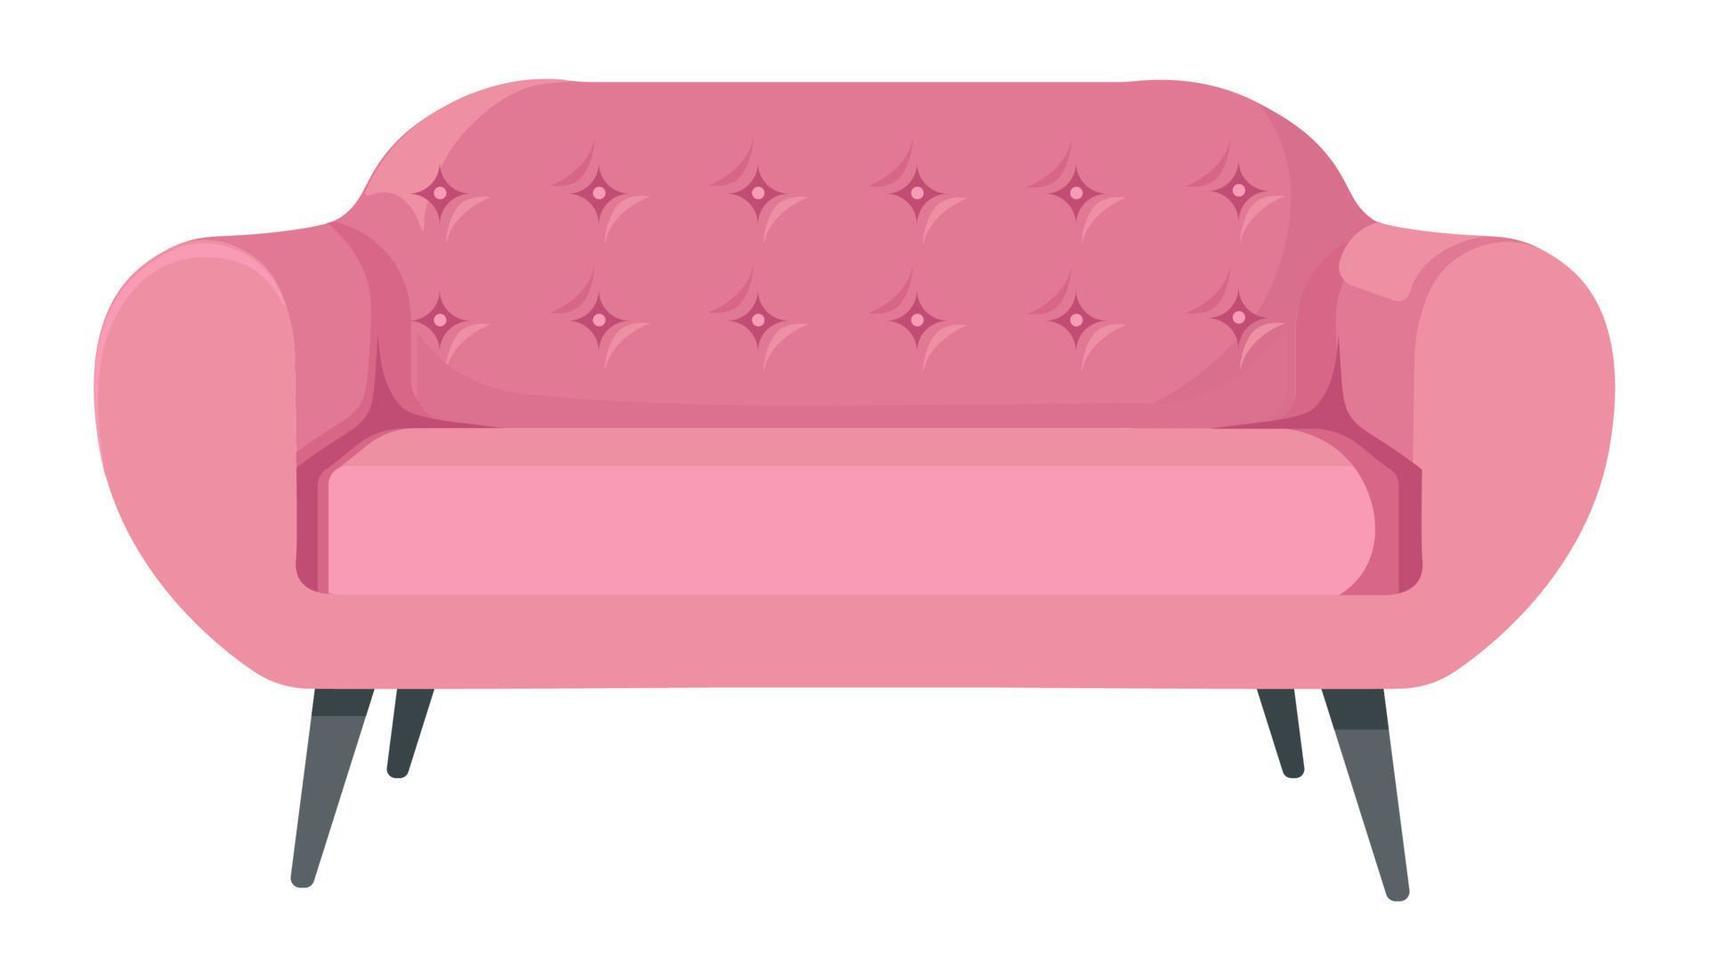 stilvolles sofa auf holzbeinen, moderne möbel für zu hause vektor